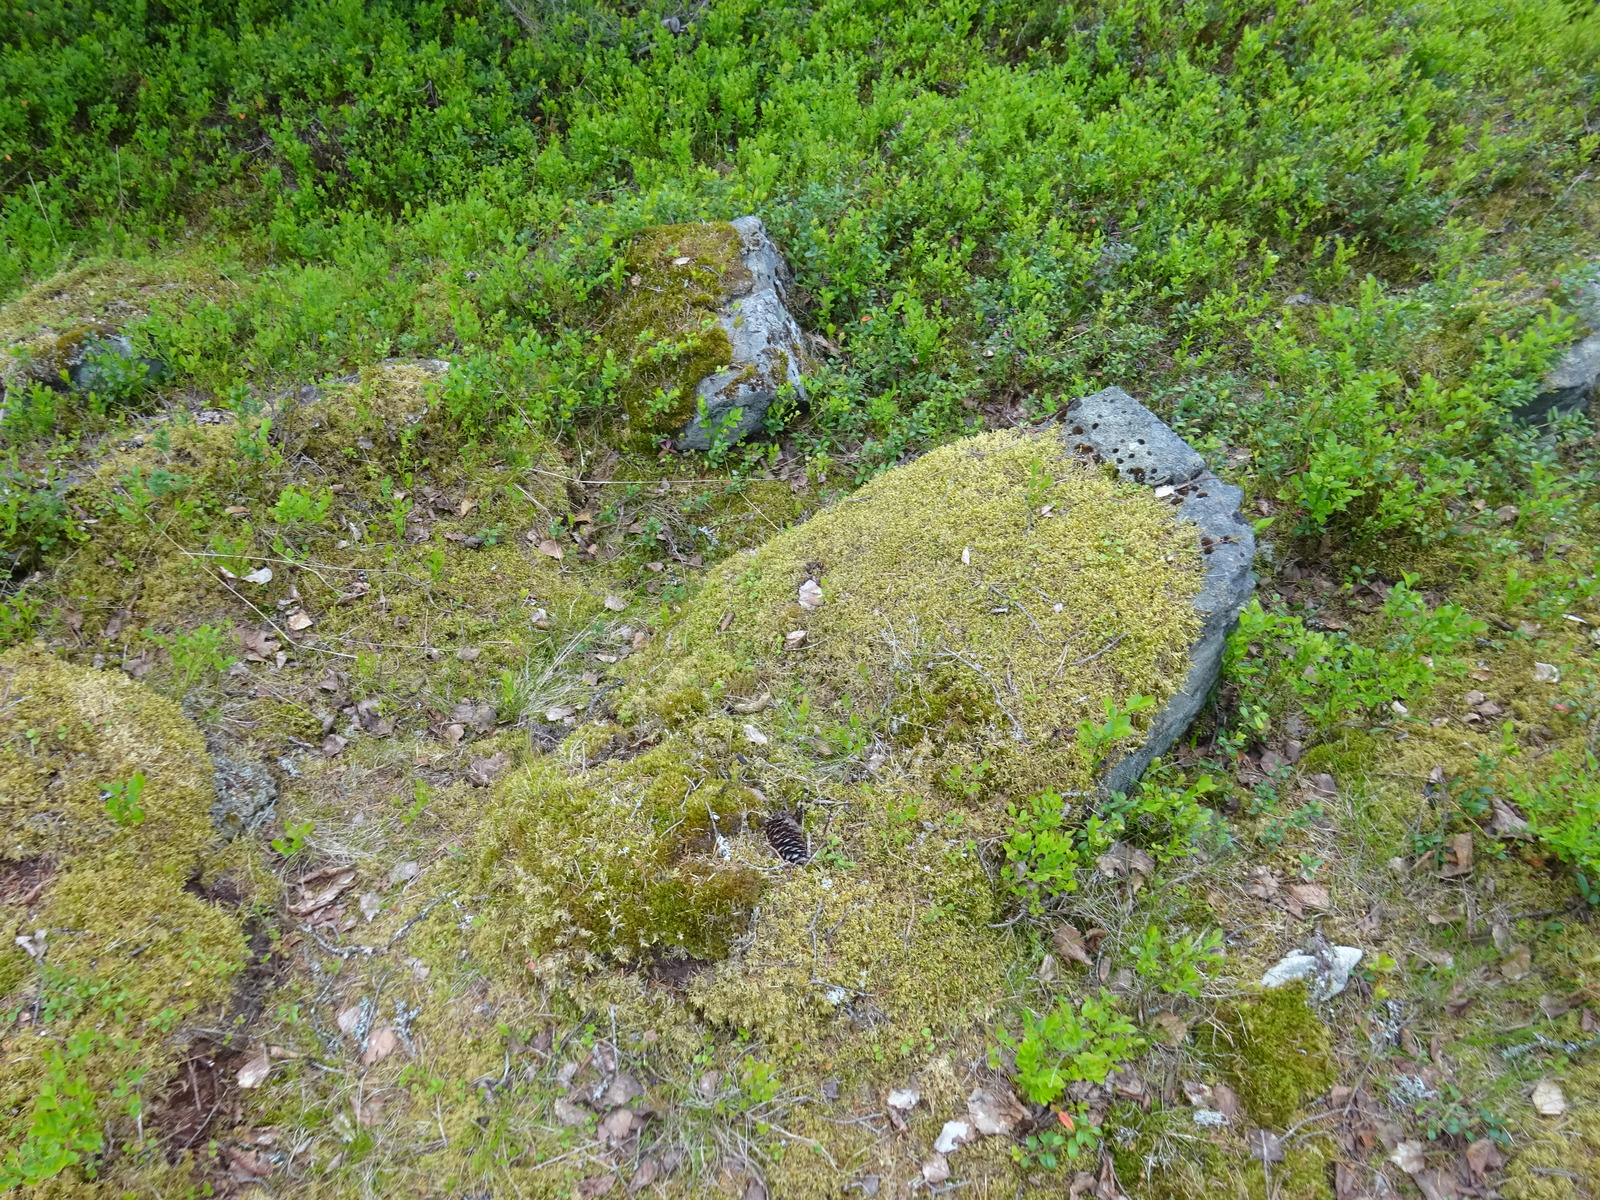 Maassa on sammaloituneita kiviä, joiden ympärillä kasvaa mustikanvarpuja.